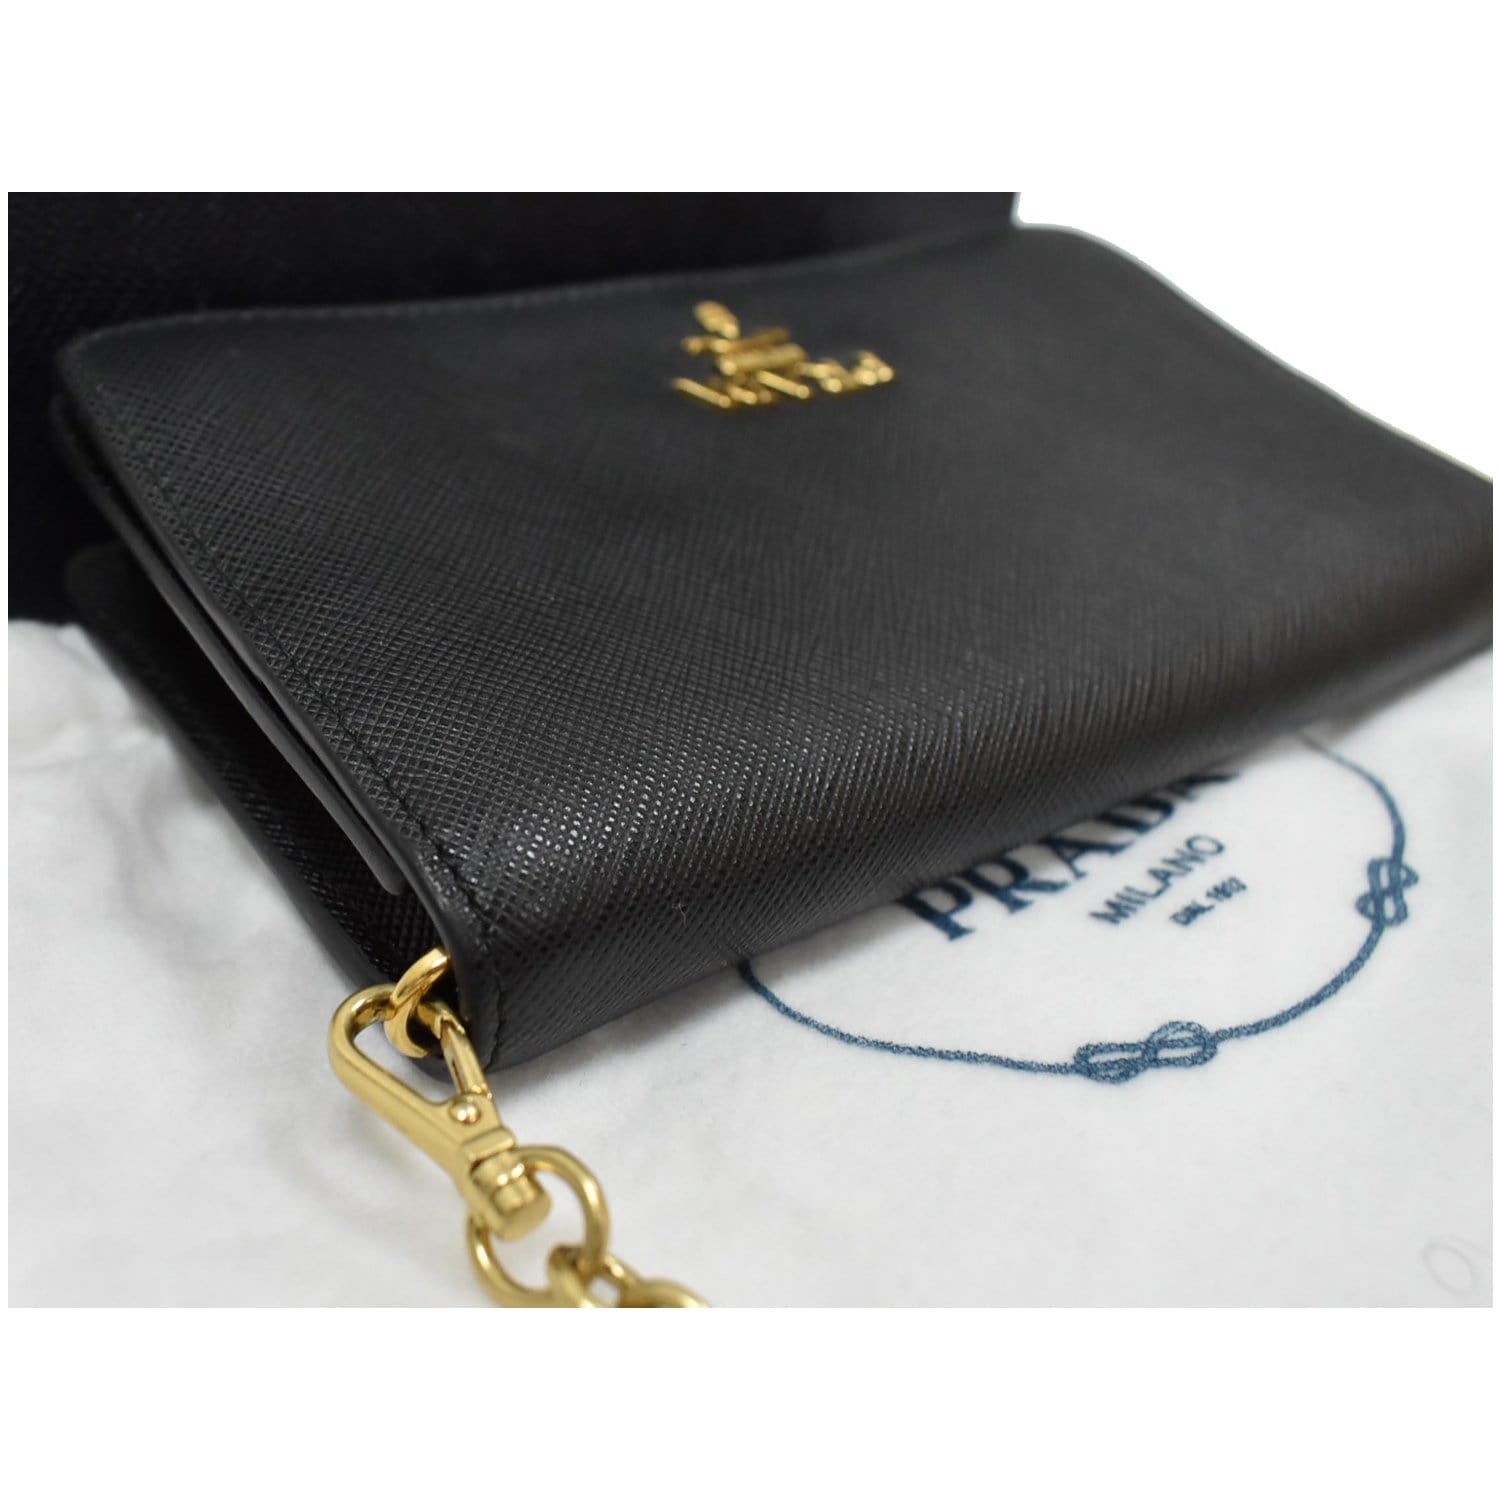 Saffiano Leather Mini Bag Chain tarnished? : r/Prada